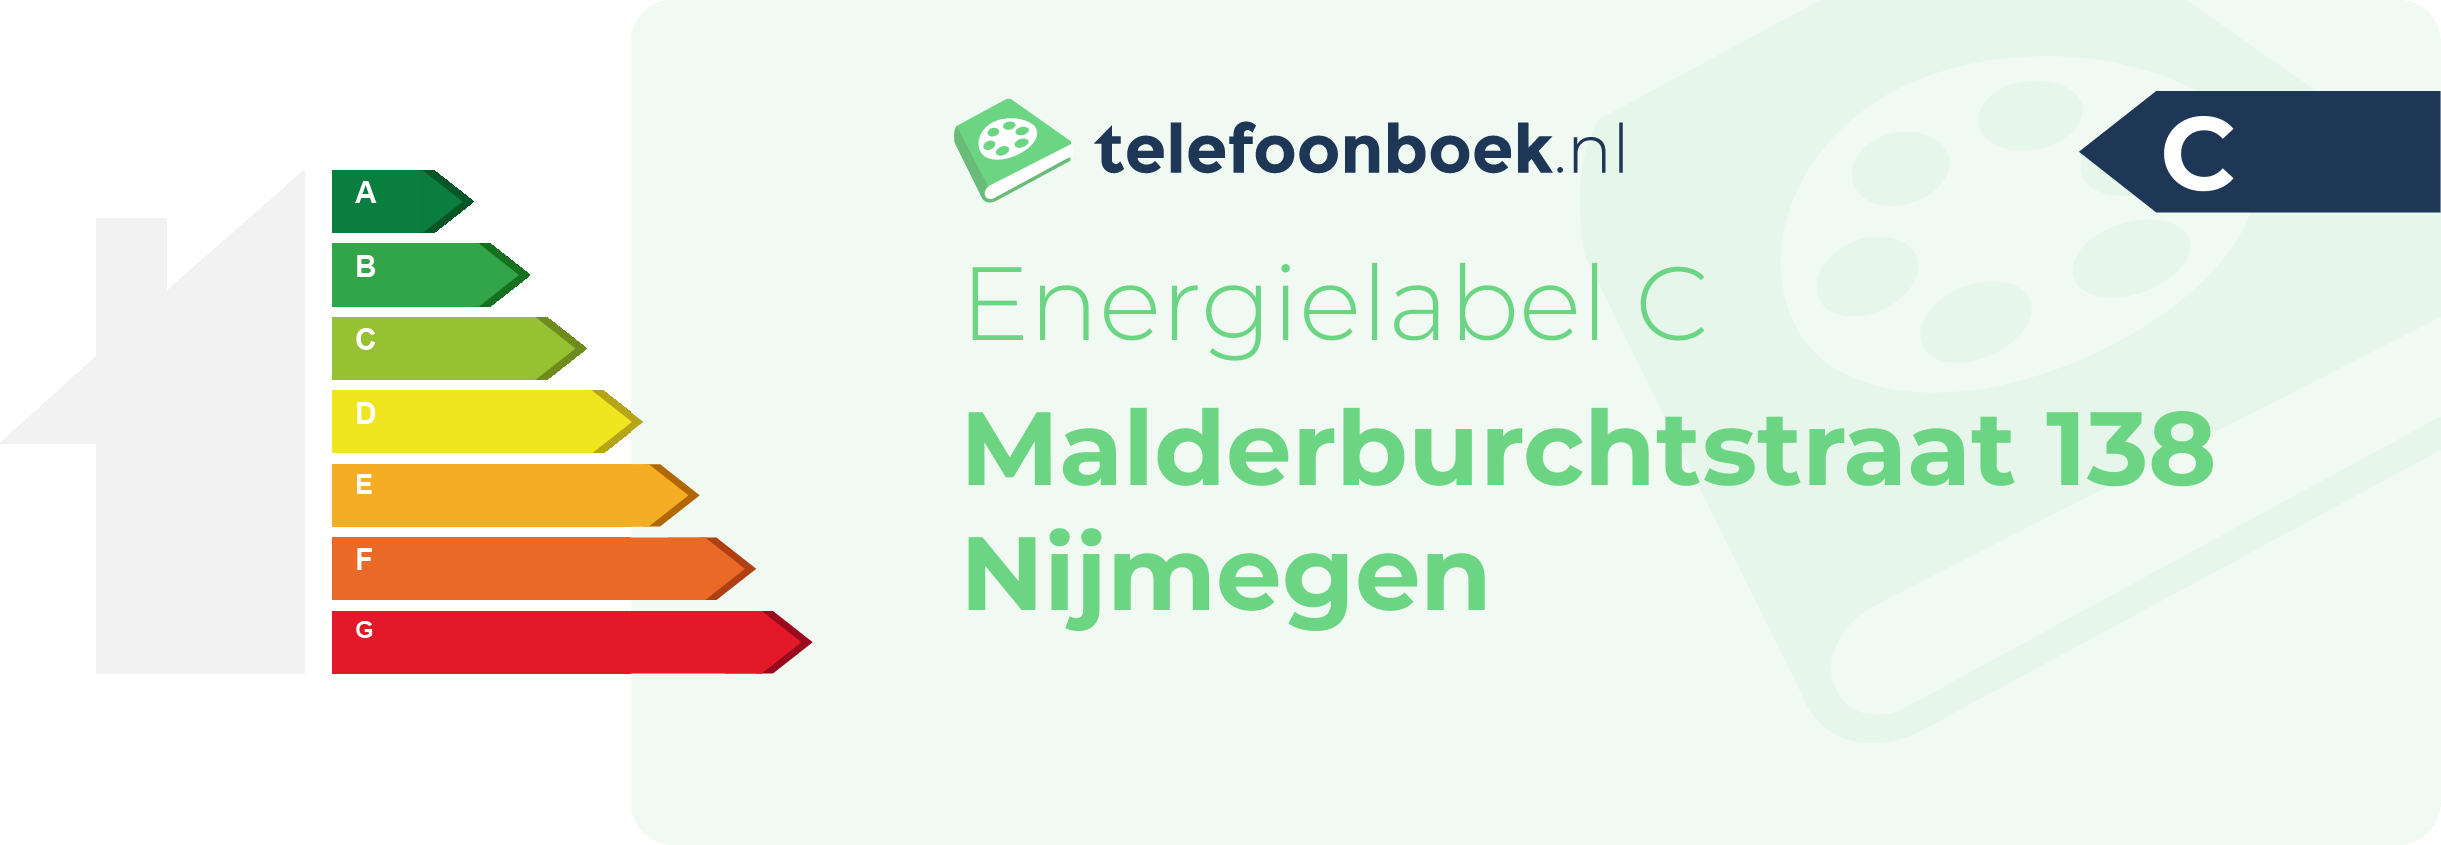 Energielabel Malderburchtstraat 138 Nijmegen